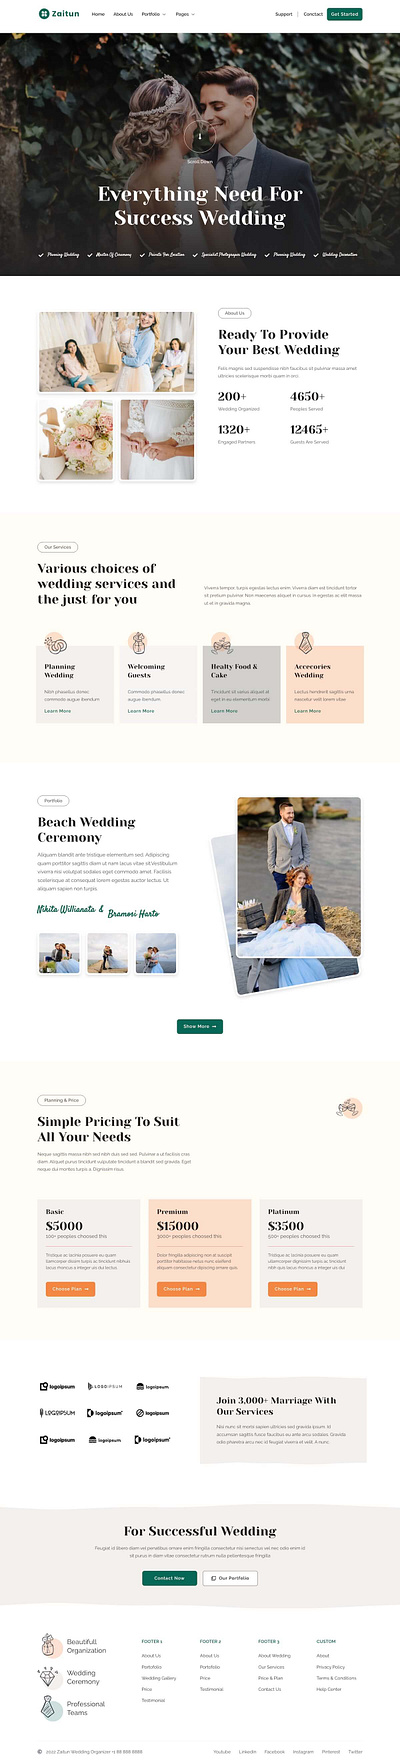 Wedding Planner Website UI Design website design website ui ux design wedding planner ui design wedding planner website wedding website